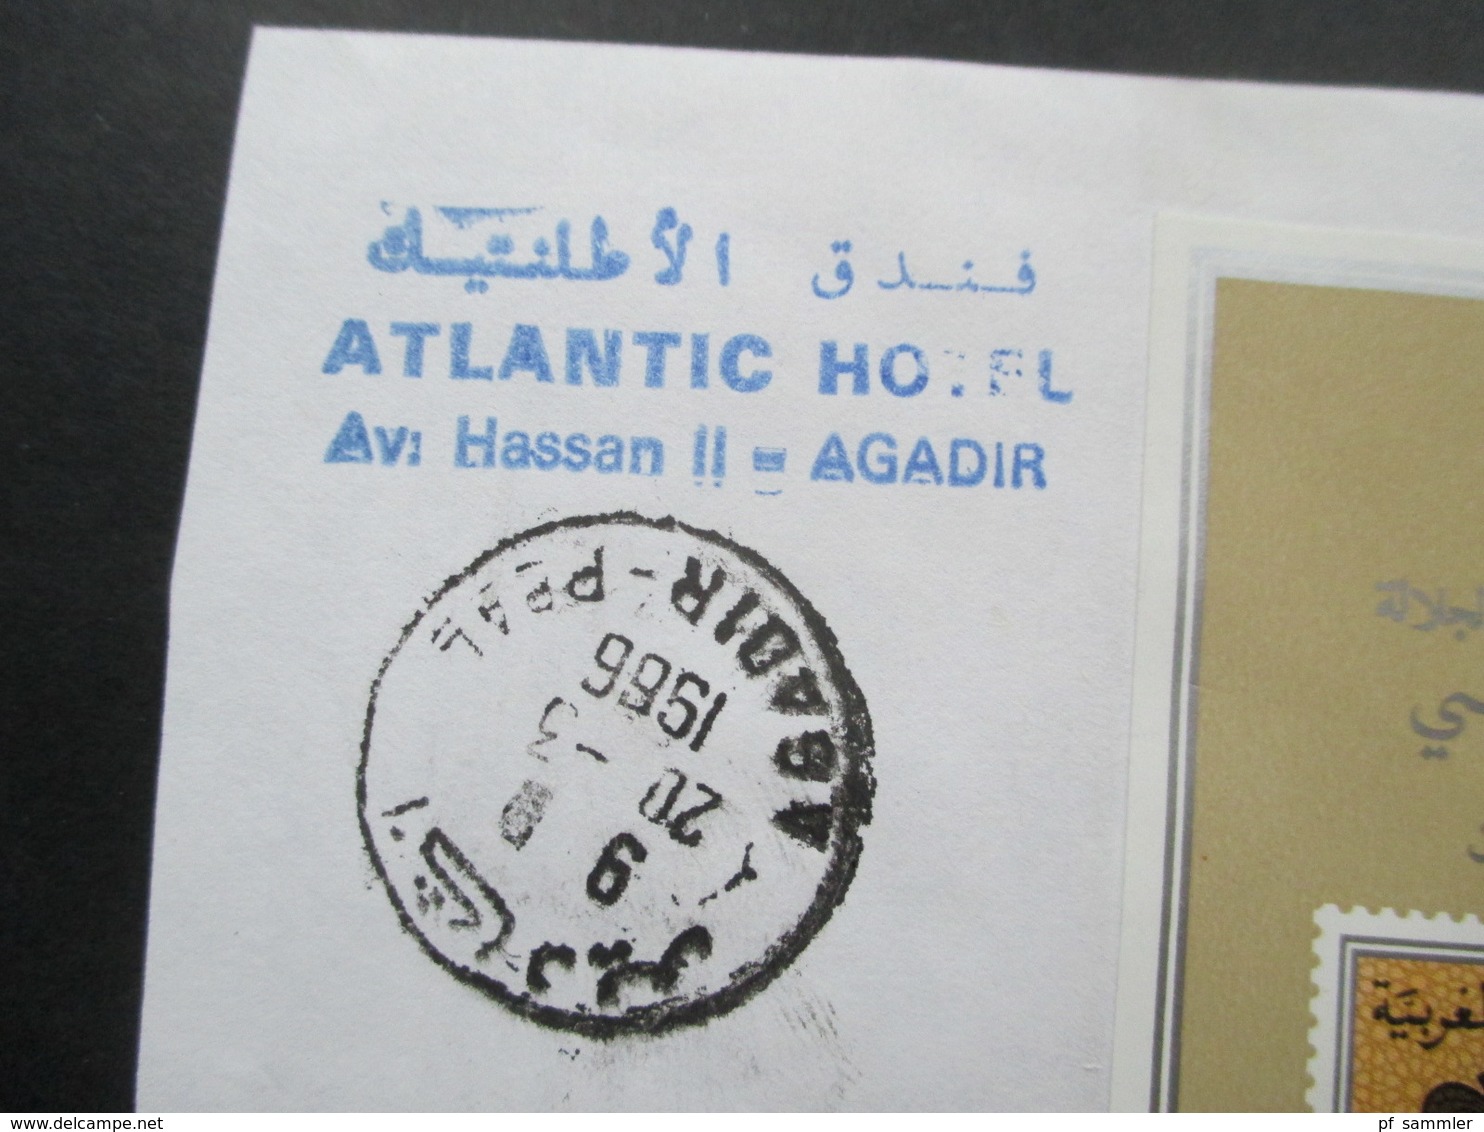 Marokko Luftpostbrief Jubiläumsblock 25. Kronjubiläum König Hassan II. Atlantic Hotel Av. Hassan II Agadir. RRR - Marokko (1956-...)